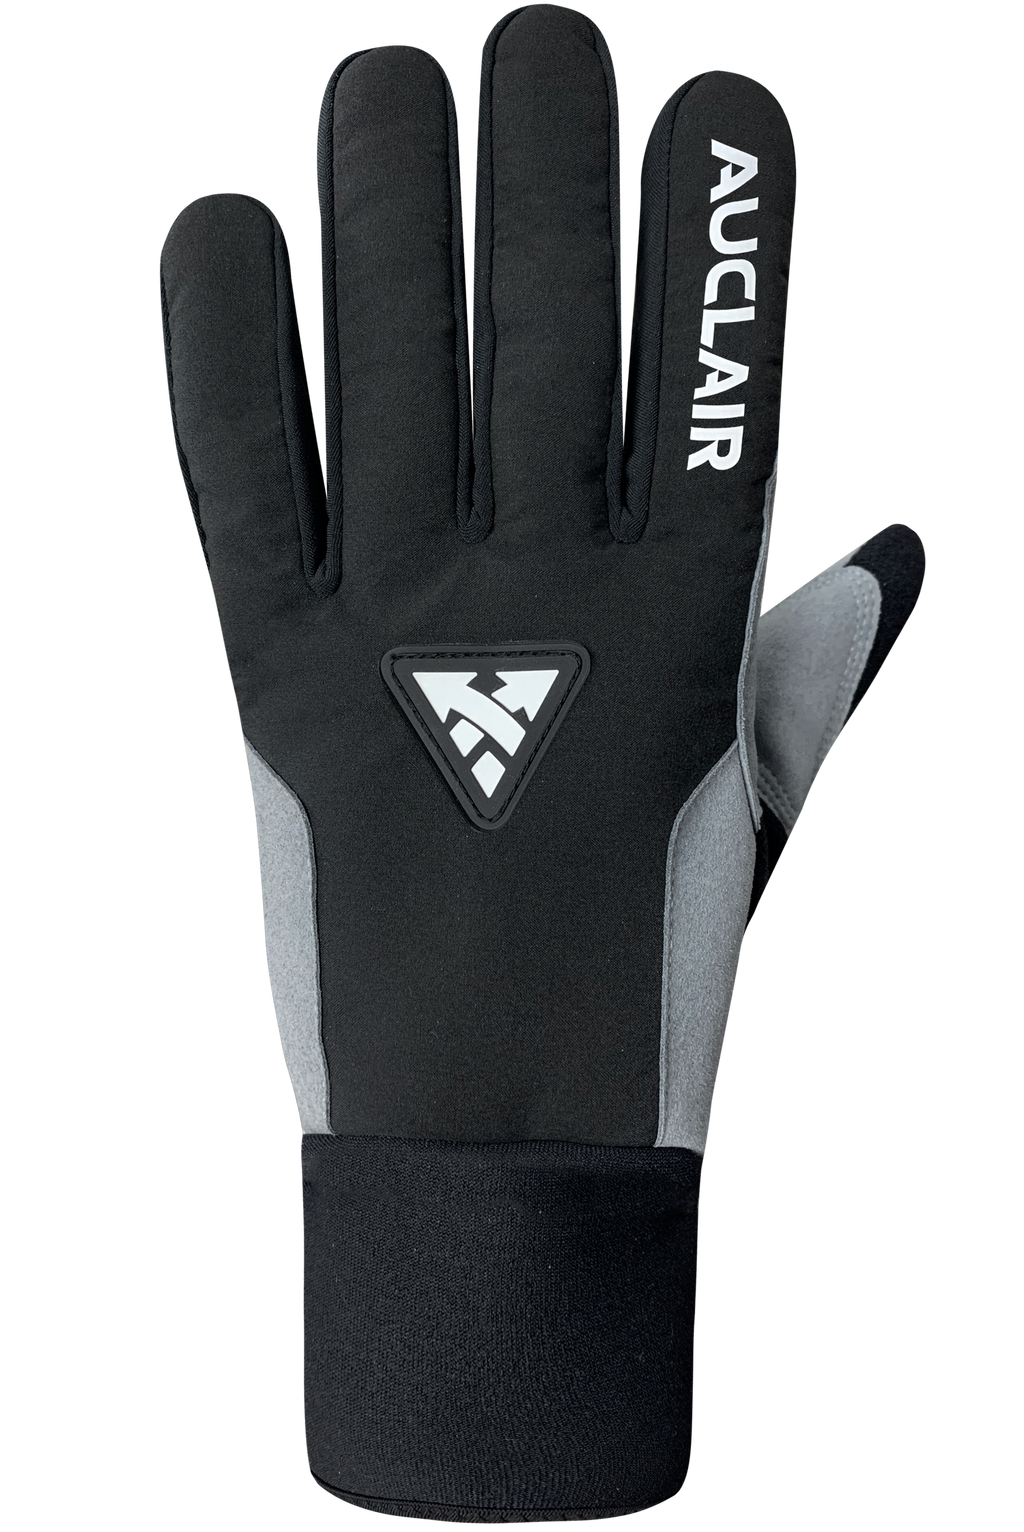 Stellar 2.0 Gloves - Women